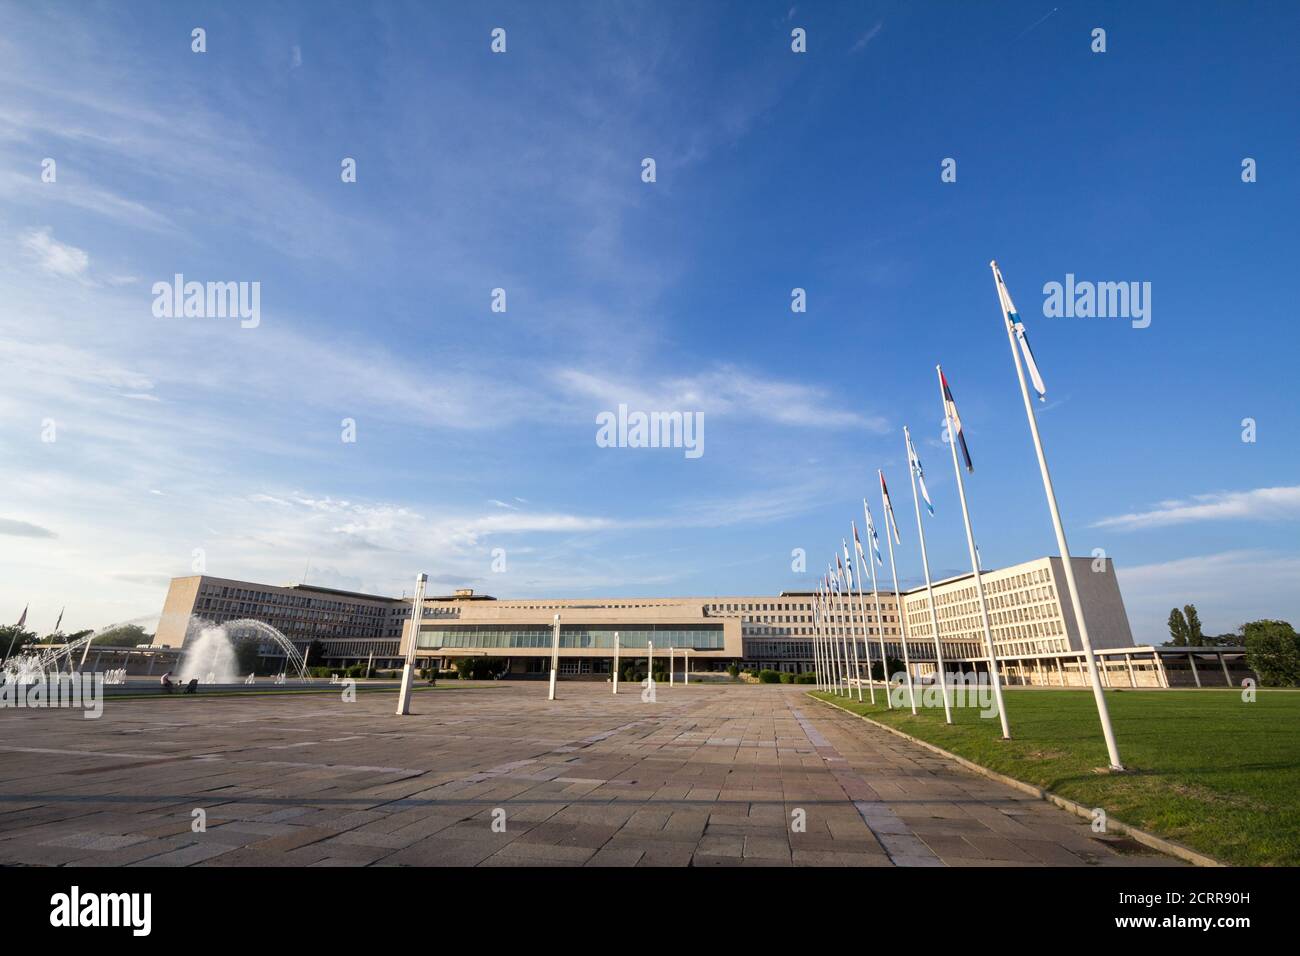 BELGRAD, SERBIEN - JULI 26 2018: Panorama des SIV-Gebäudes, auch bekannt als Palata Srbija, oder Palast von Serbien. Es ist das Hauptquartier der serbischen Regierung Stockfoto